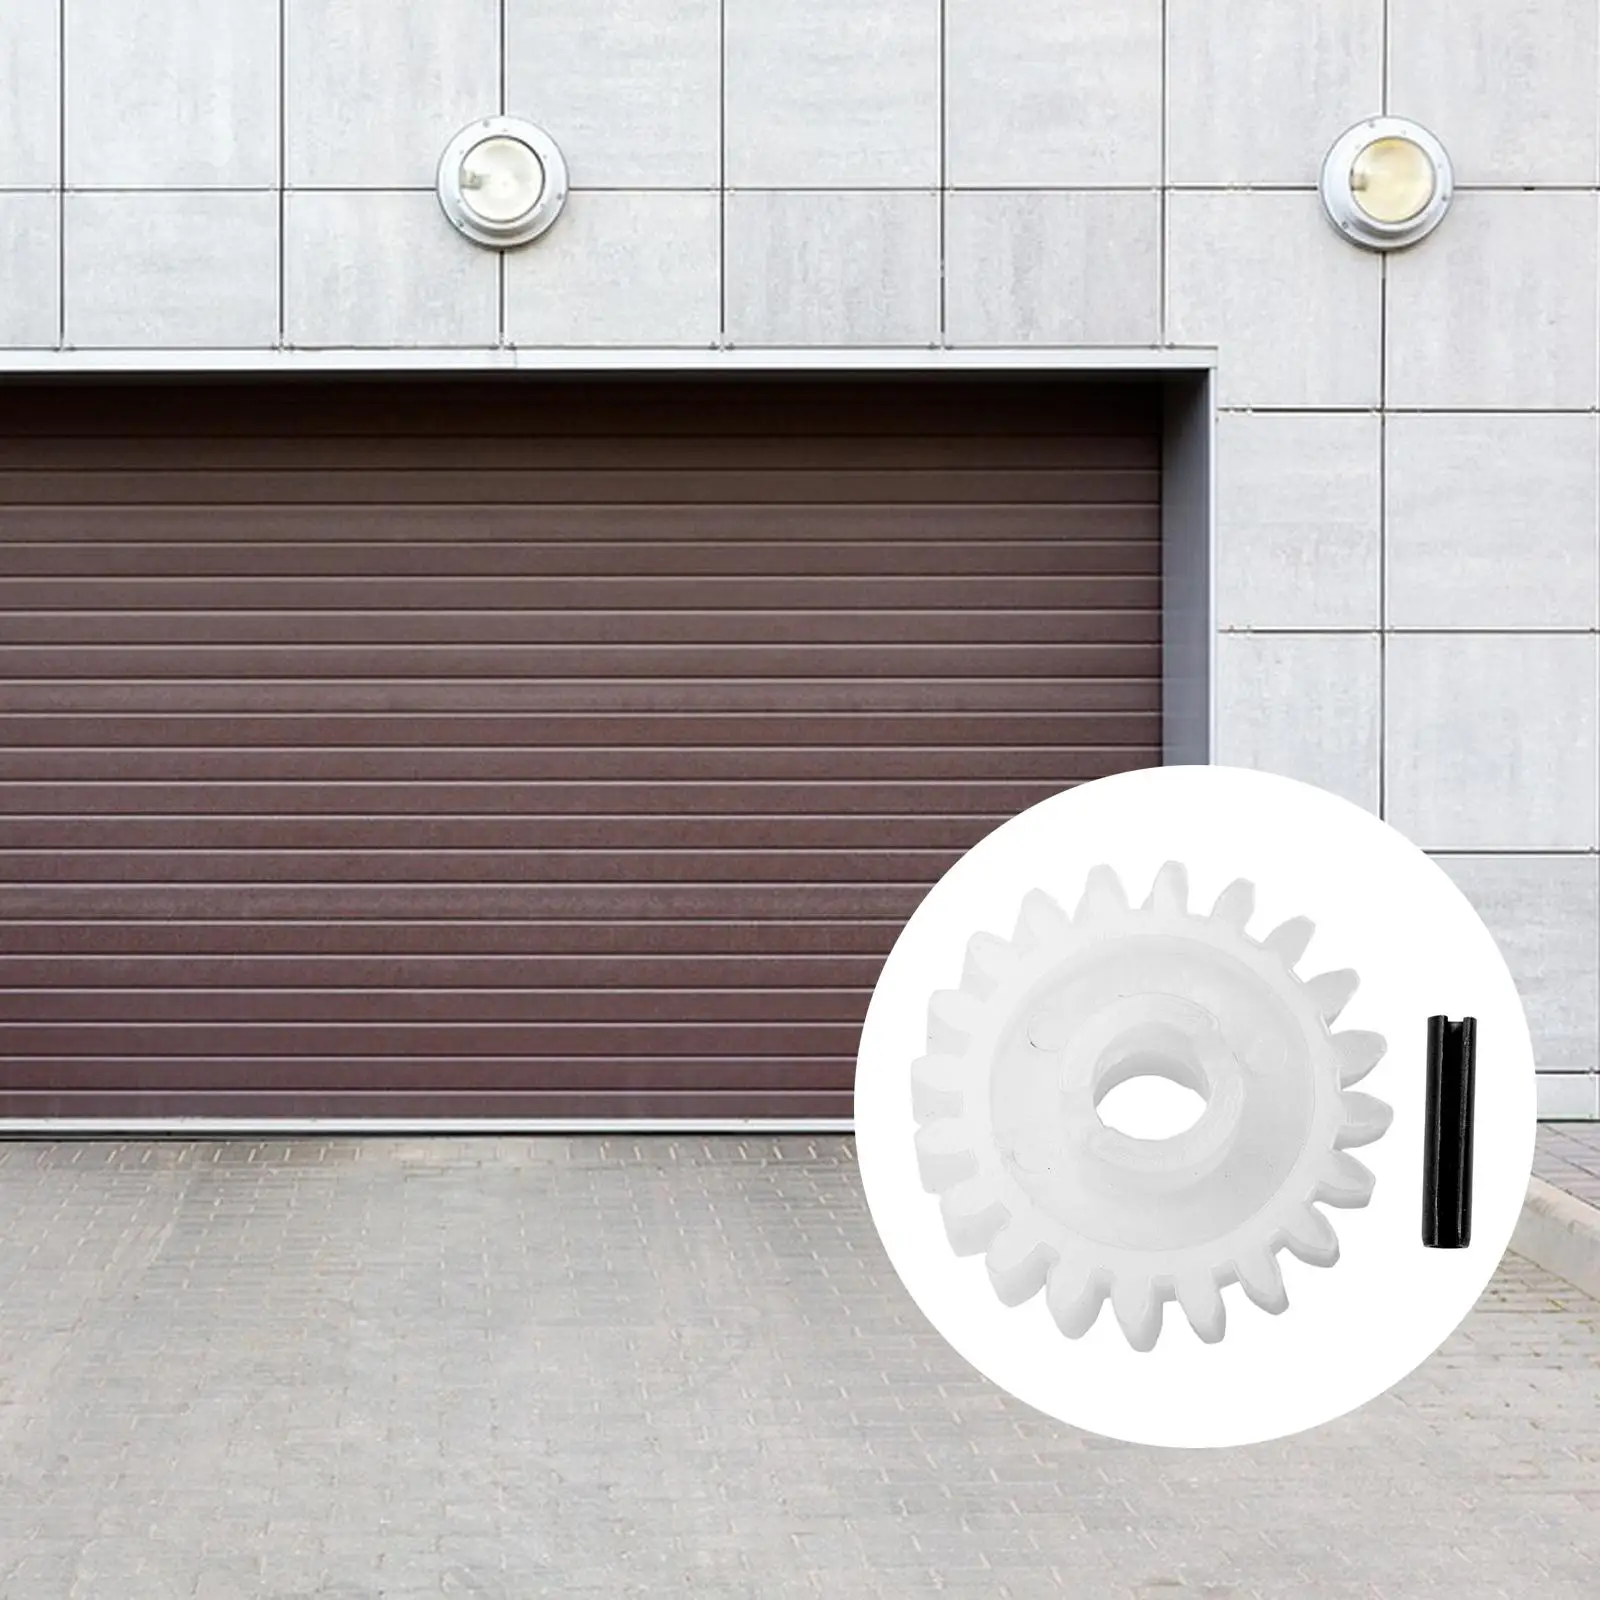 Garage Door Replacement Parts 2.17inch Upgrade Replaceable Garage Door Opener for XX133 XX333 XX350 Spare Part DIY Accessory